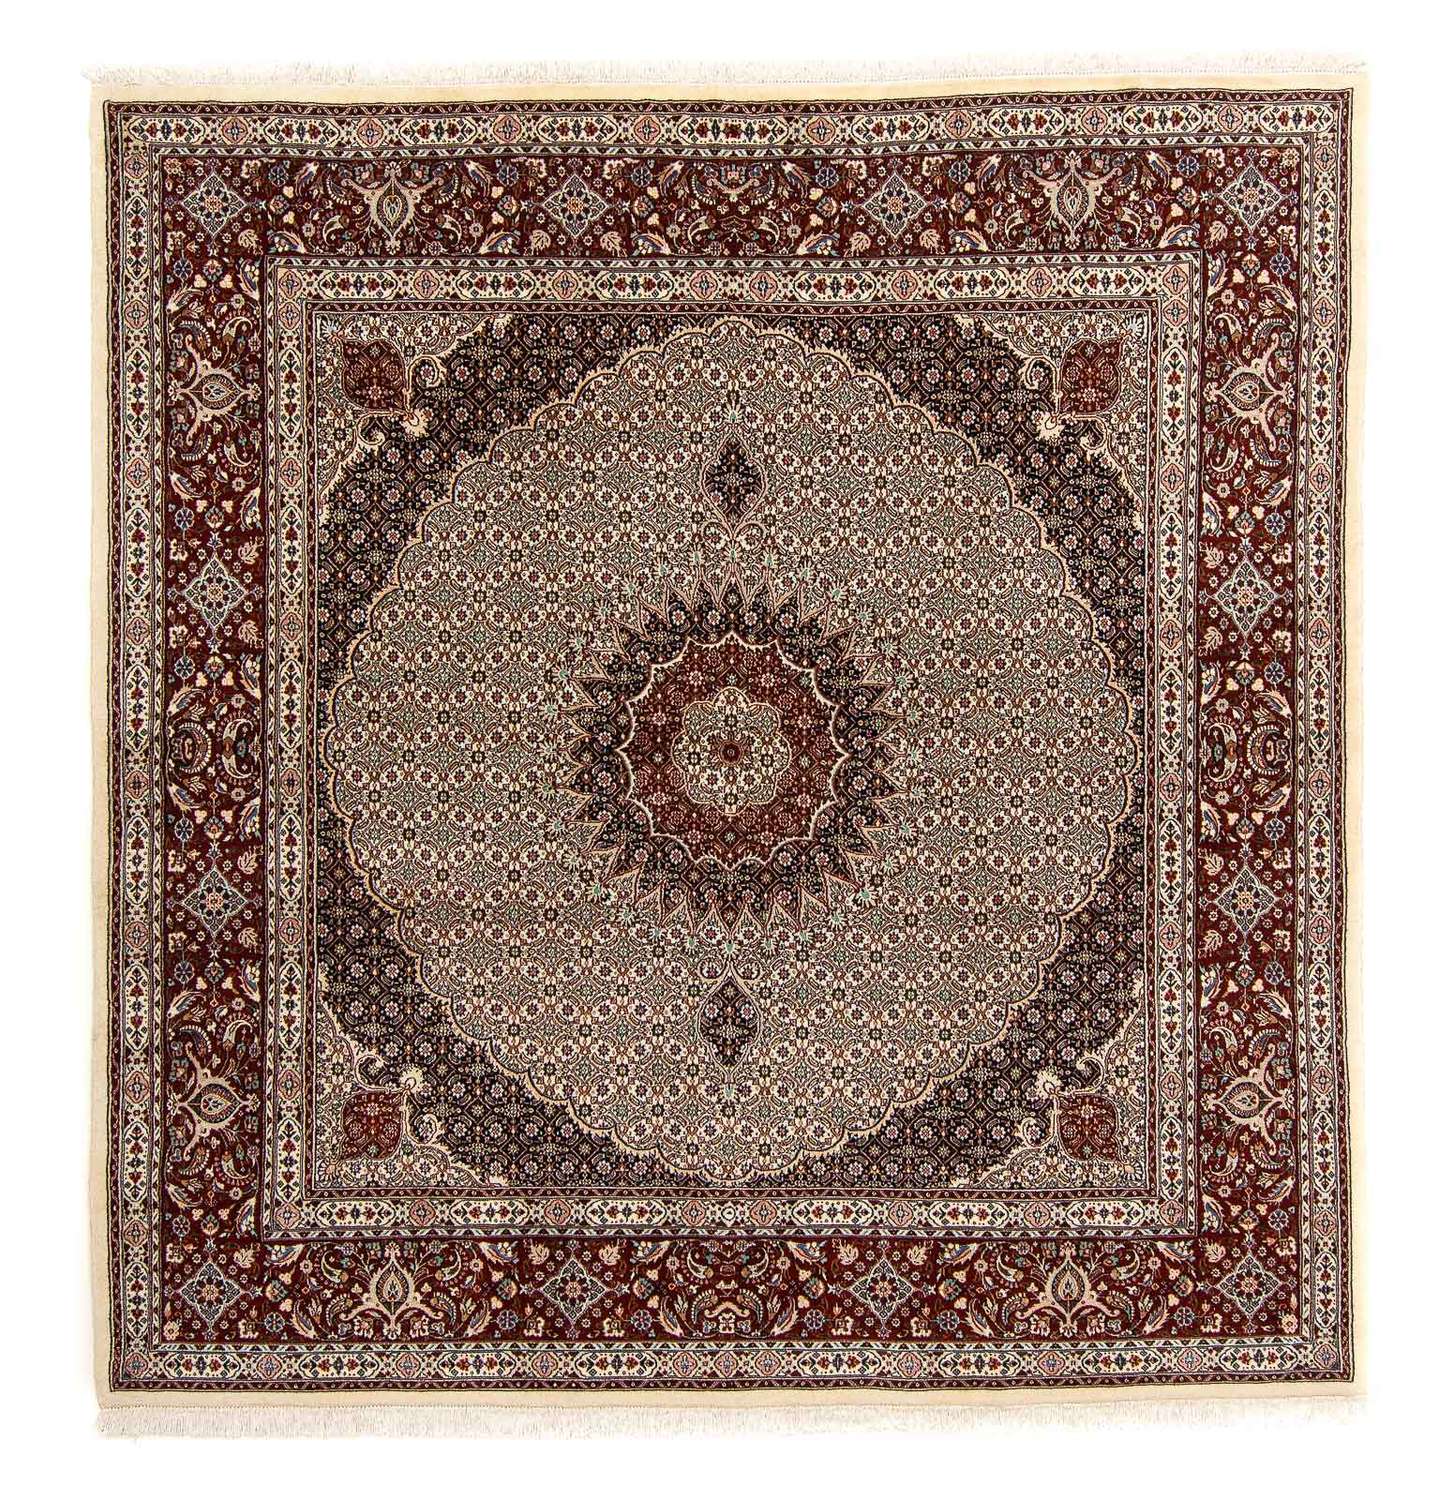 Tapis persan - Classique carré  - 262 x 250 cm - marron clair